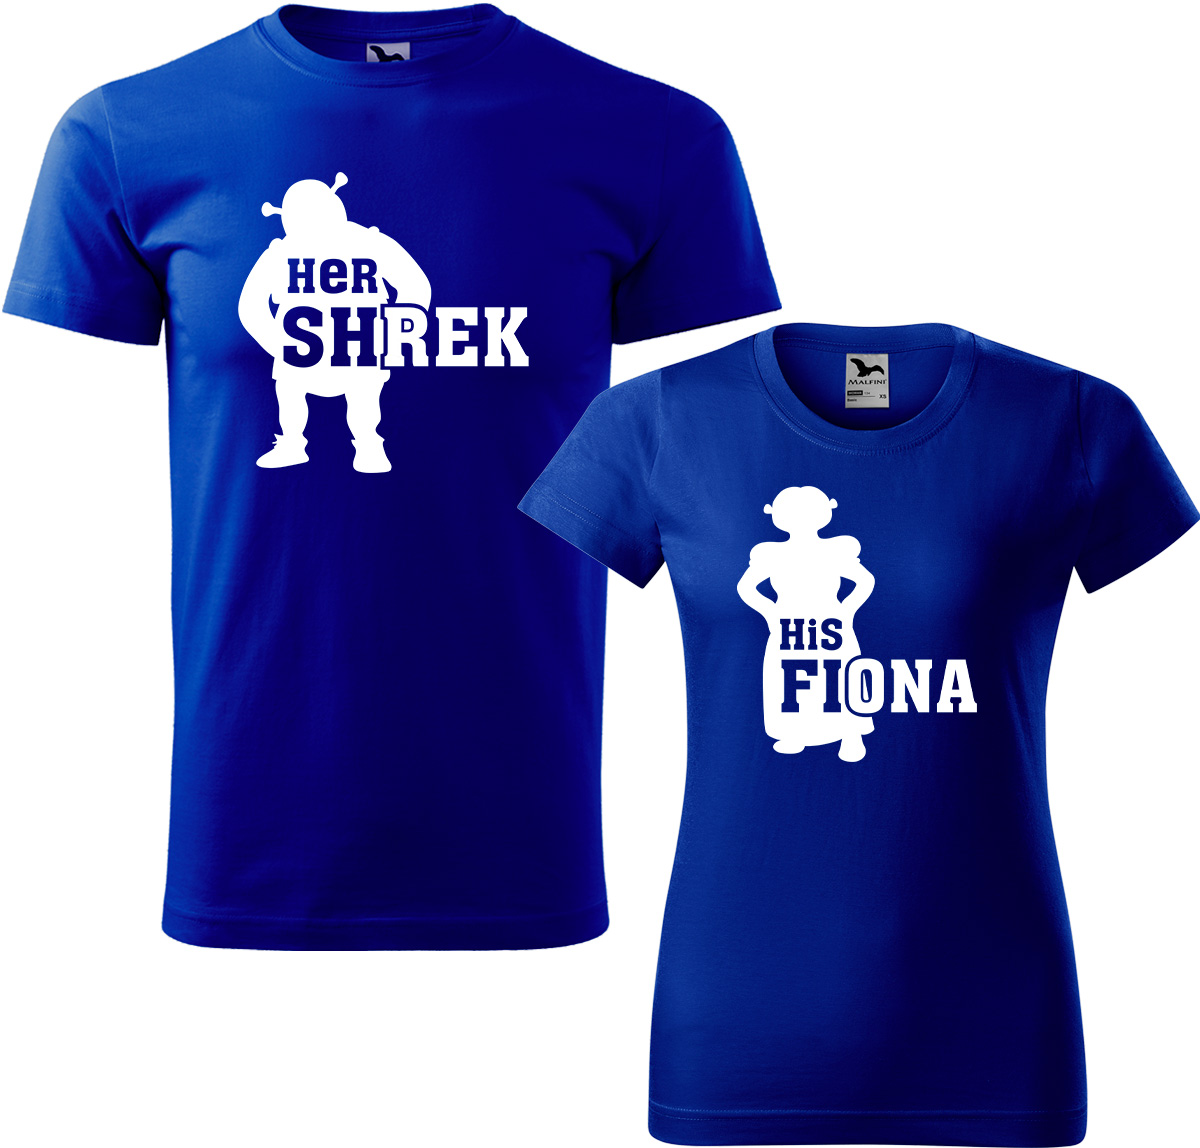 Trička pro páry - Shrek a Fiona Barva: Královská modrá (05), Velikost dámské tričko: S, Velikost pánské tričko: M